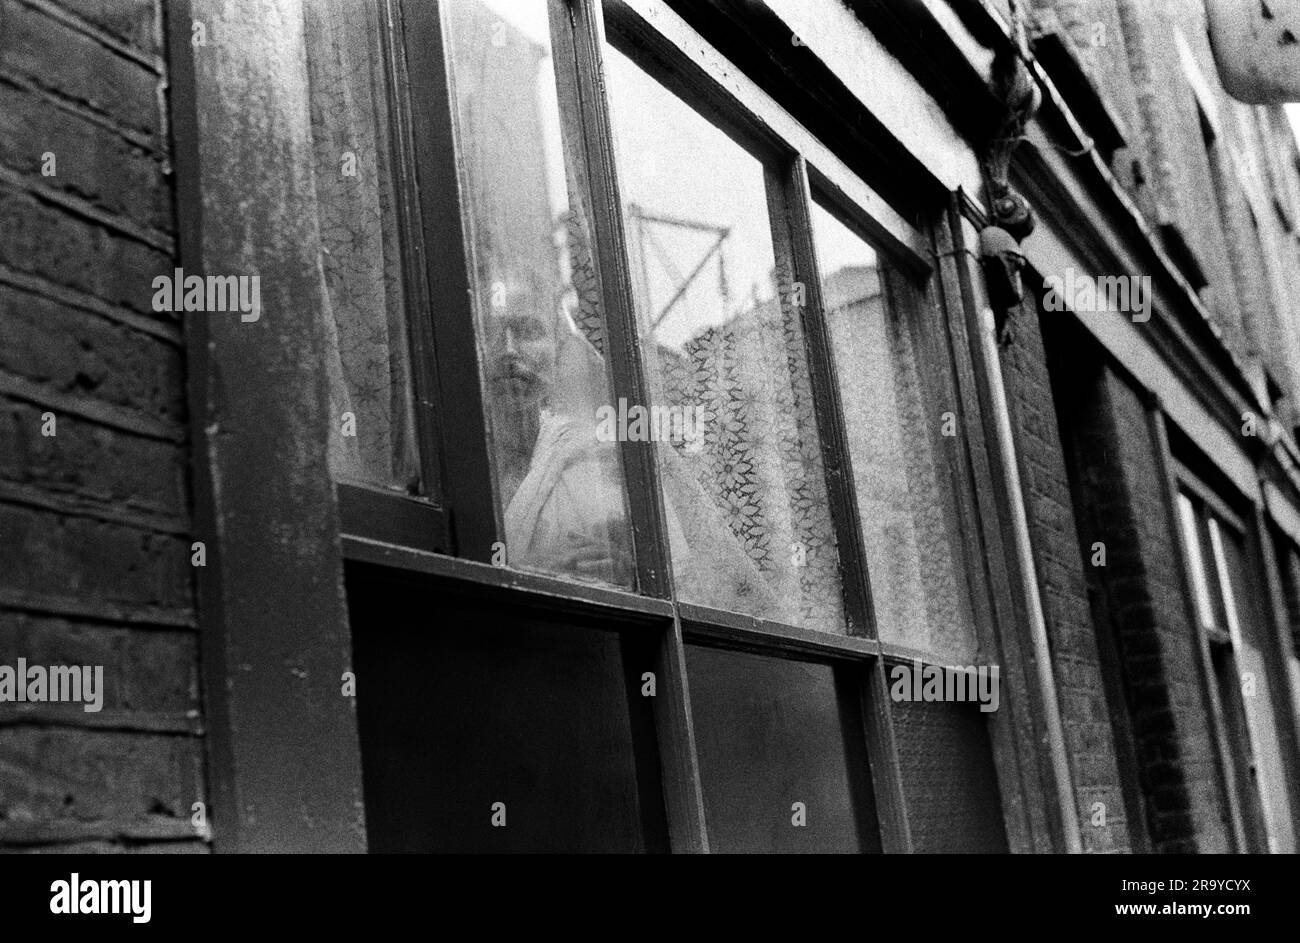 Whitechapel London in una strada appena fuori Brick Lane, una donna asiatica solitaria guarda fuori dalla sua finestra piatta. La stampa ha riferito che molti nuovi immigrati in Gran Bretagna, e in particolare le donne del Bangladesh, erano tenute sotto chiave dai loro uomini. Non parlavano la lingua e raramente erano autorizzati fuori dalle loro case. Whitechapel, Londra, Inghilterra circa 1978. Foto Stock